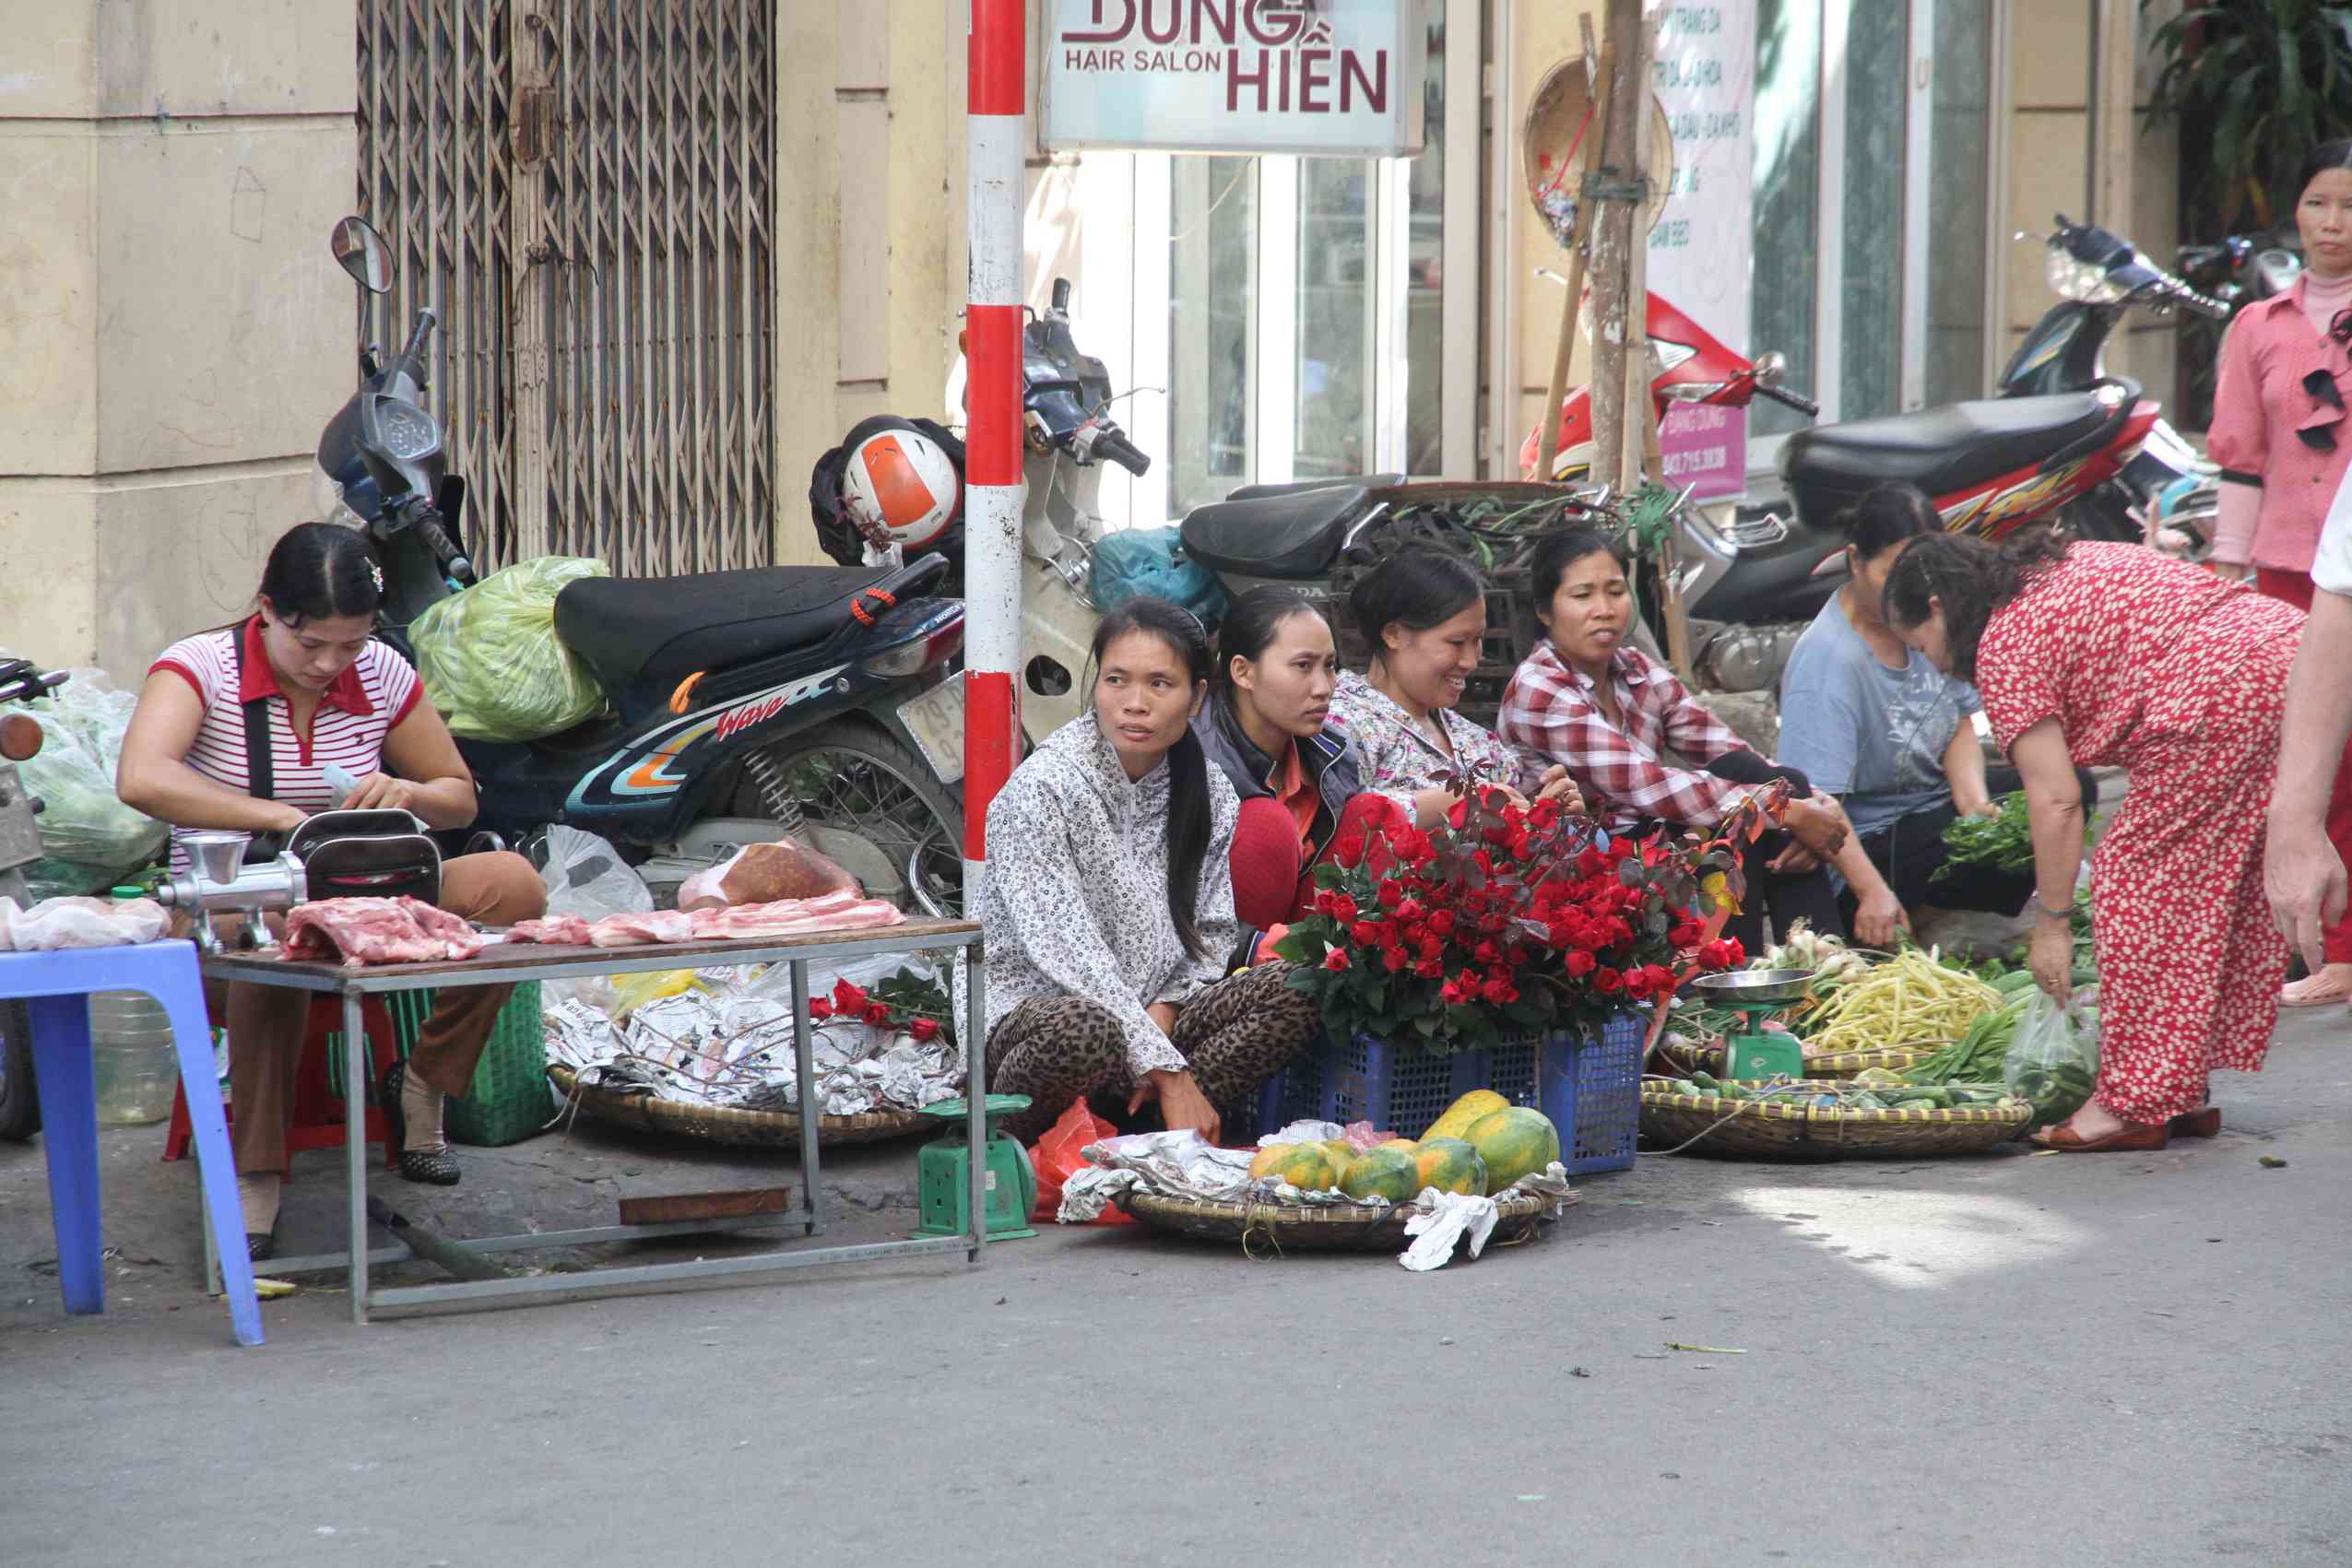 Strassenszene aus Hanoi mit Blumenverkäuferinnen am Strassenrand